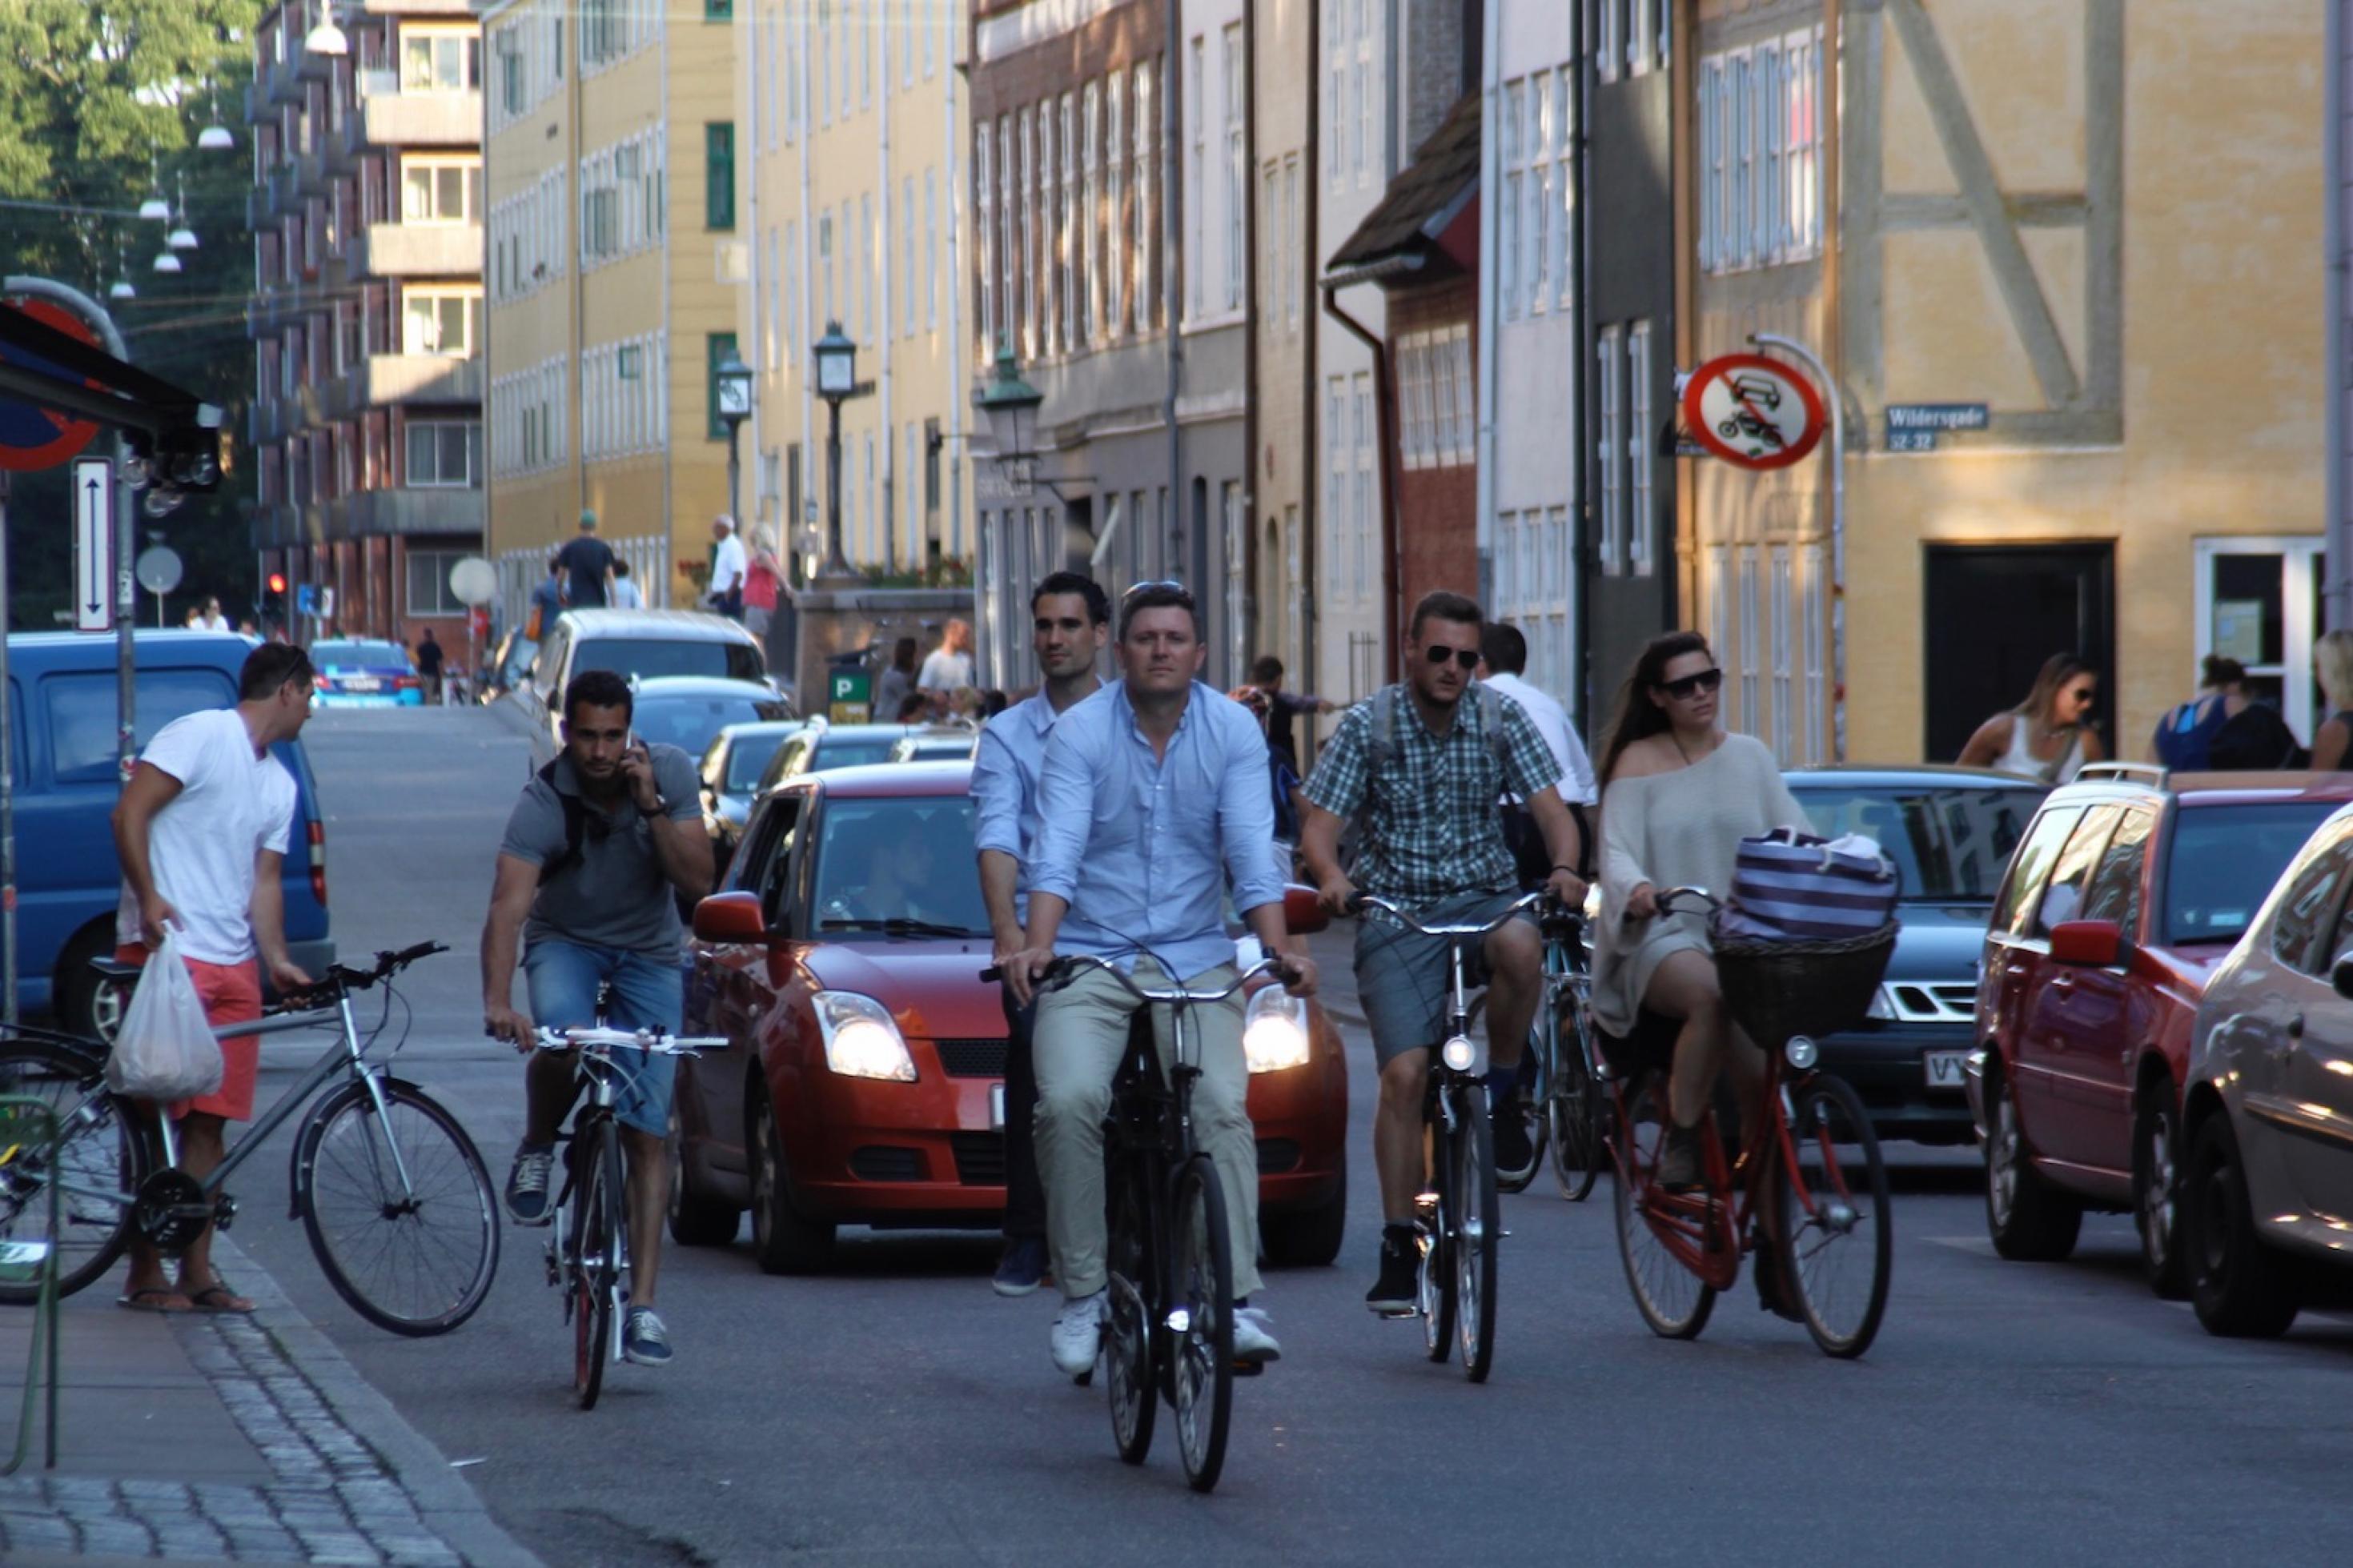 Auf einer kleinen Straße fahren viele Radfahrer. Hinter ihnen stauen sich einige Autos.